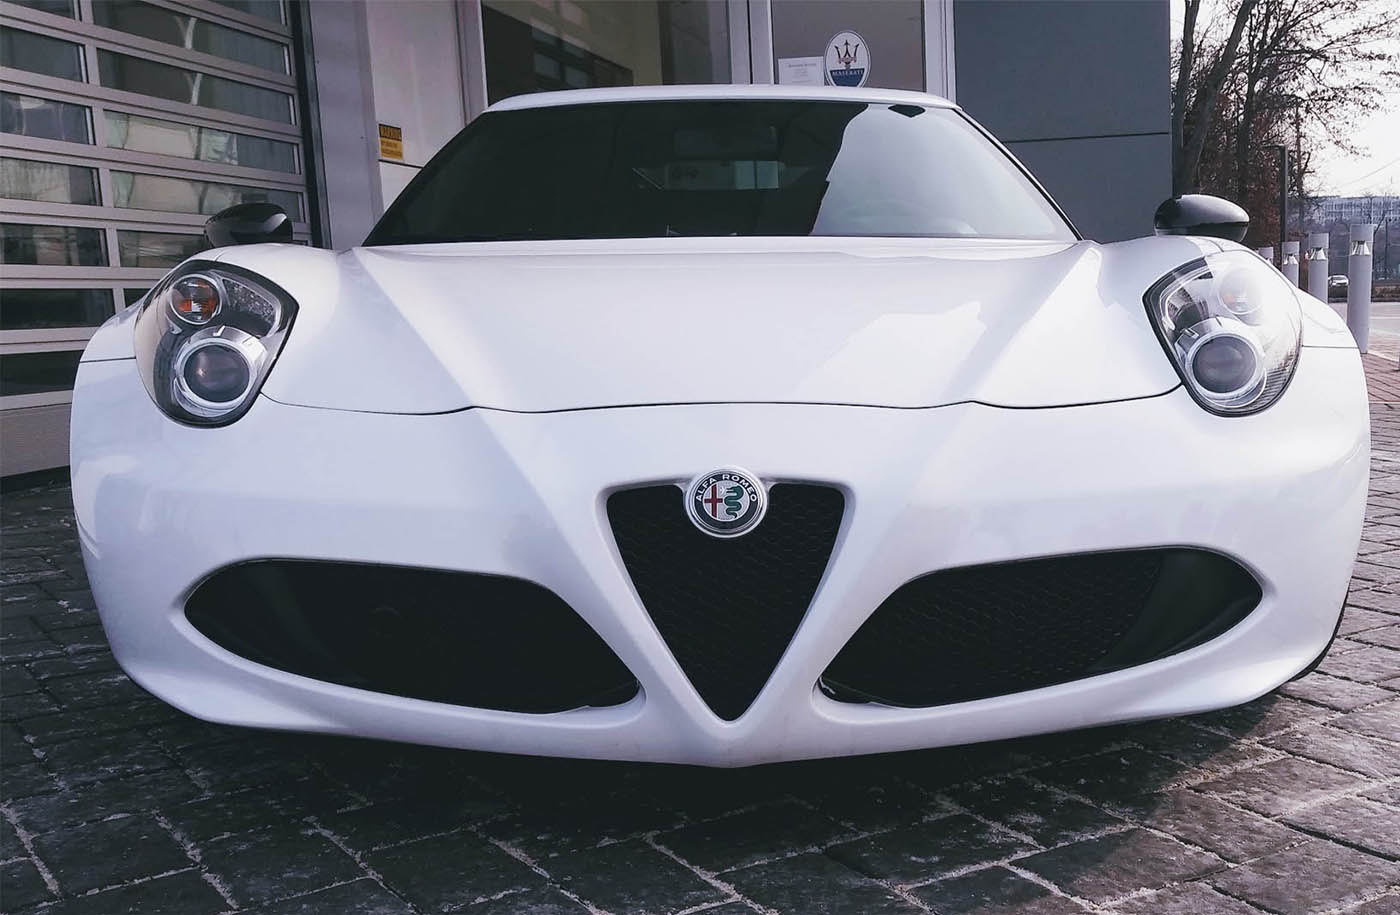 Alfa Romeo luxury car